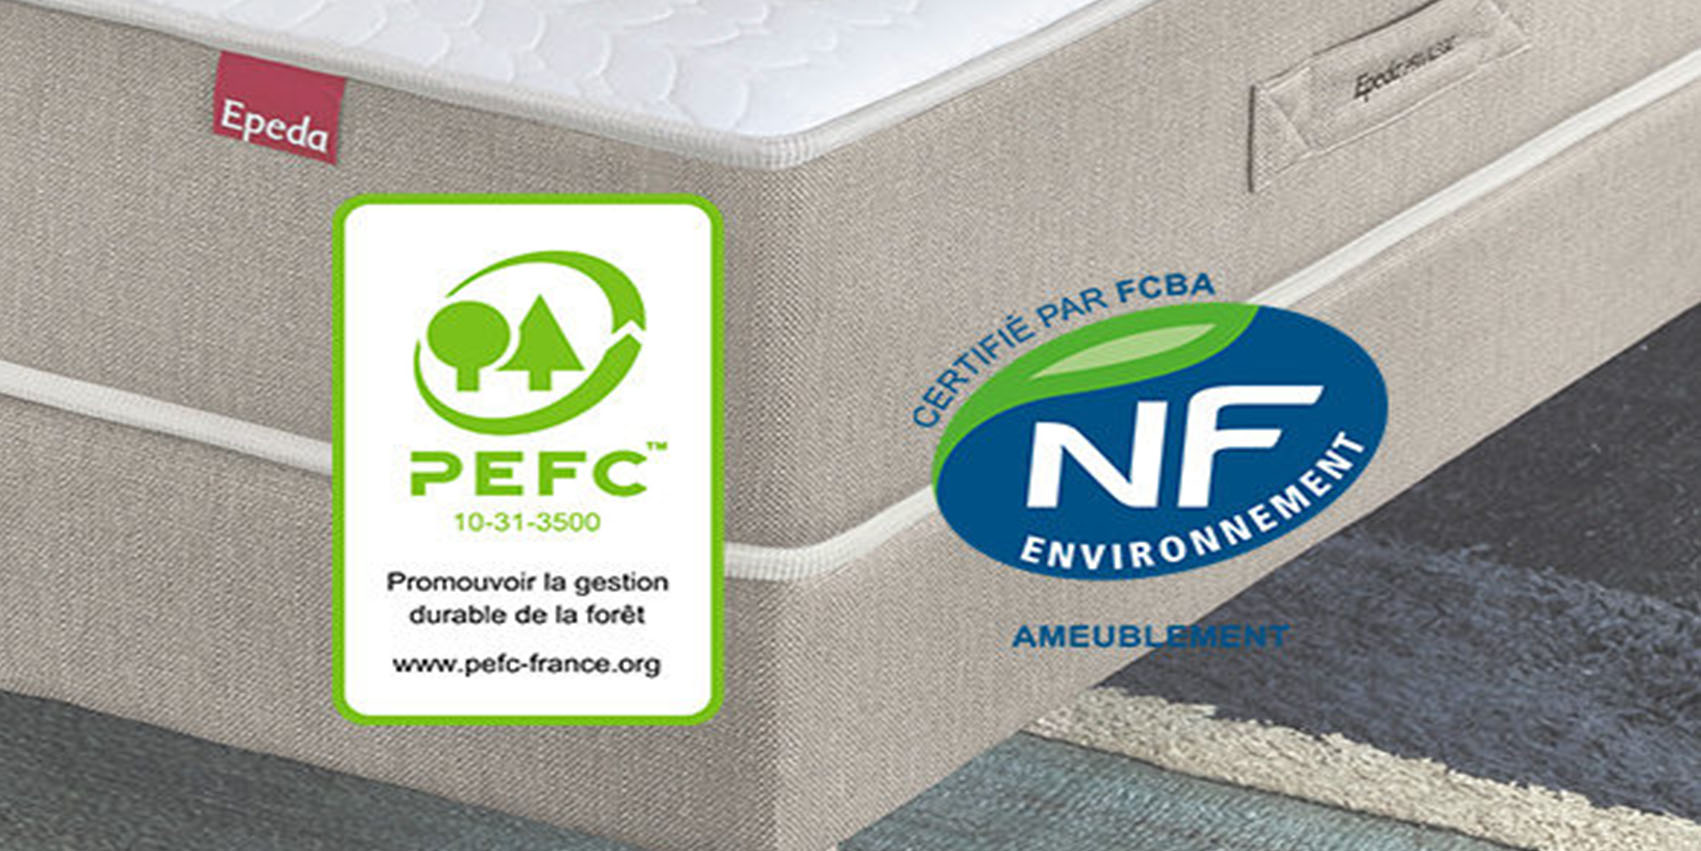 Certification PEFC er NF avec matelas en arrière plan de la marque Epeda